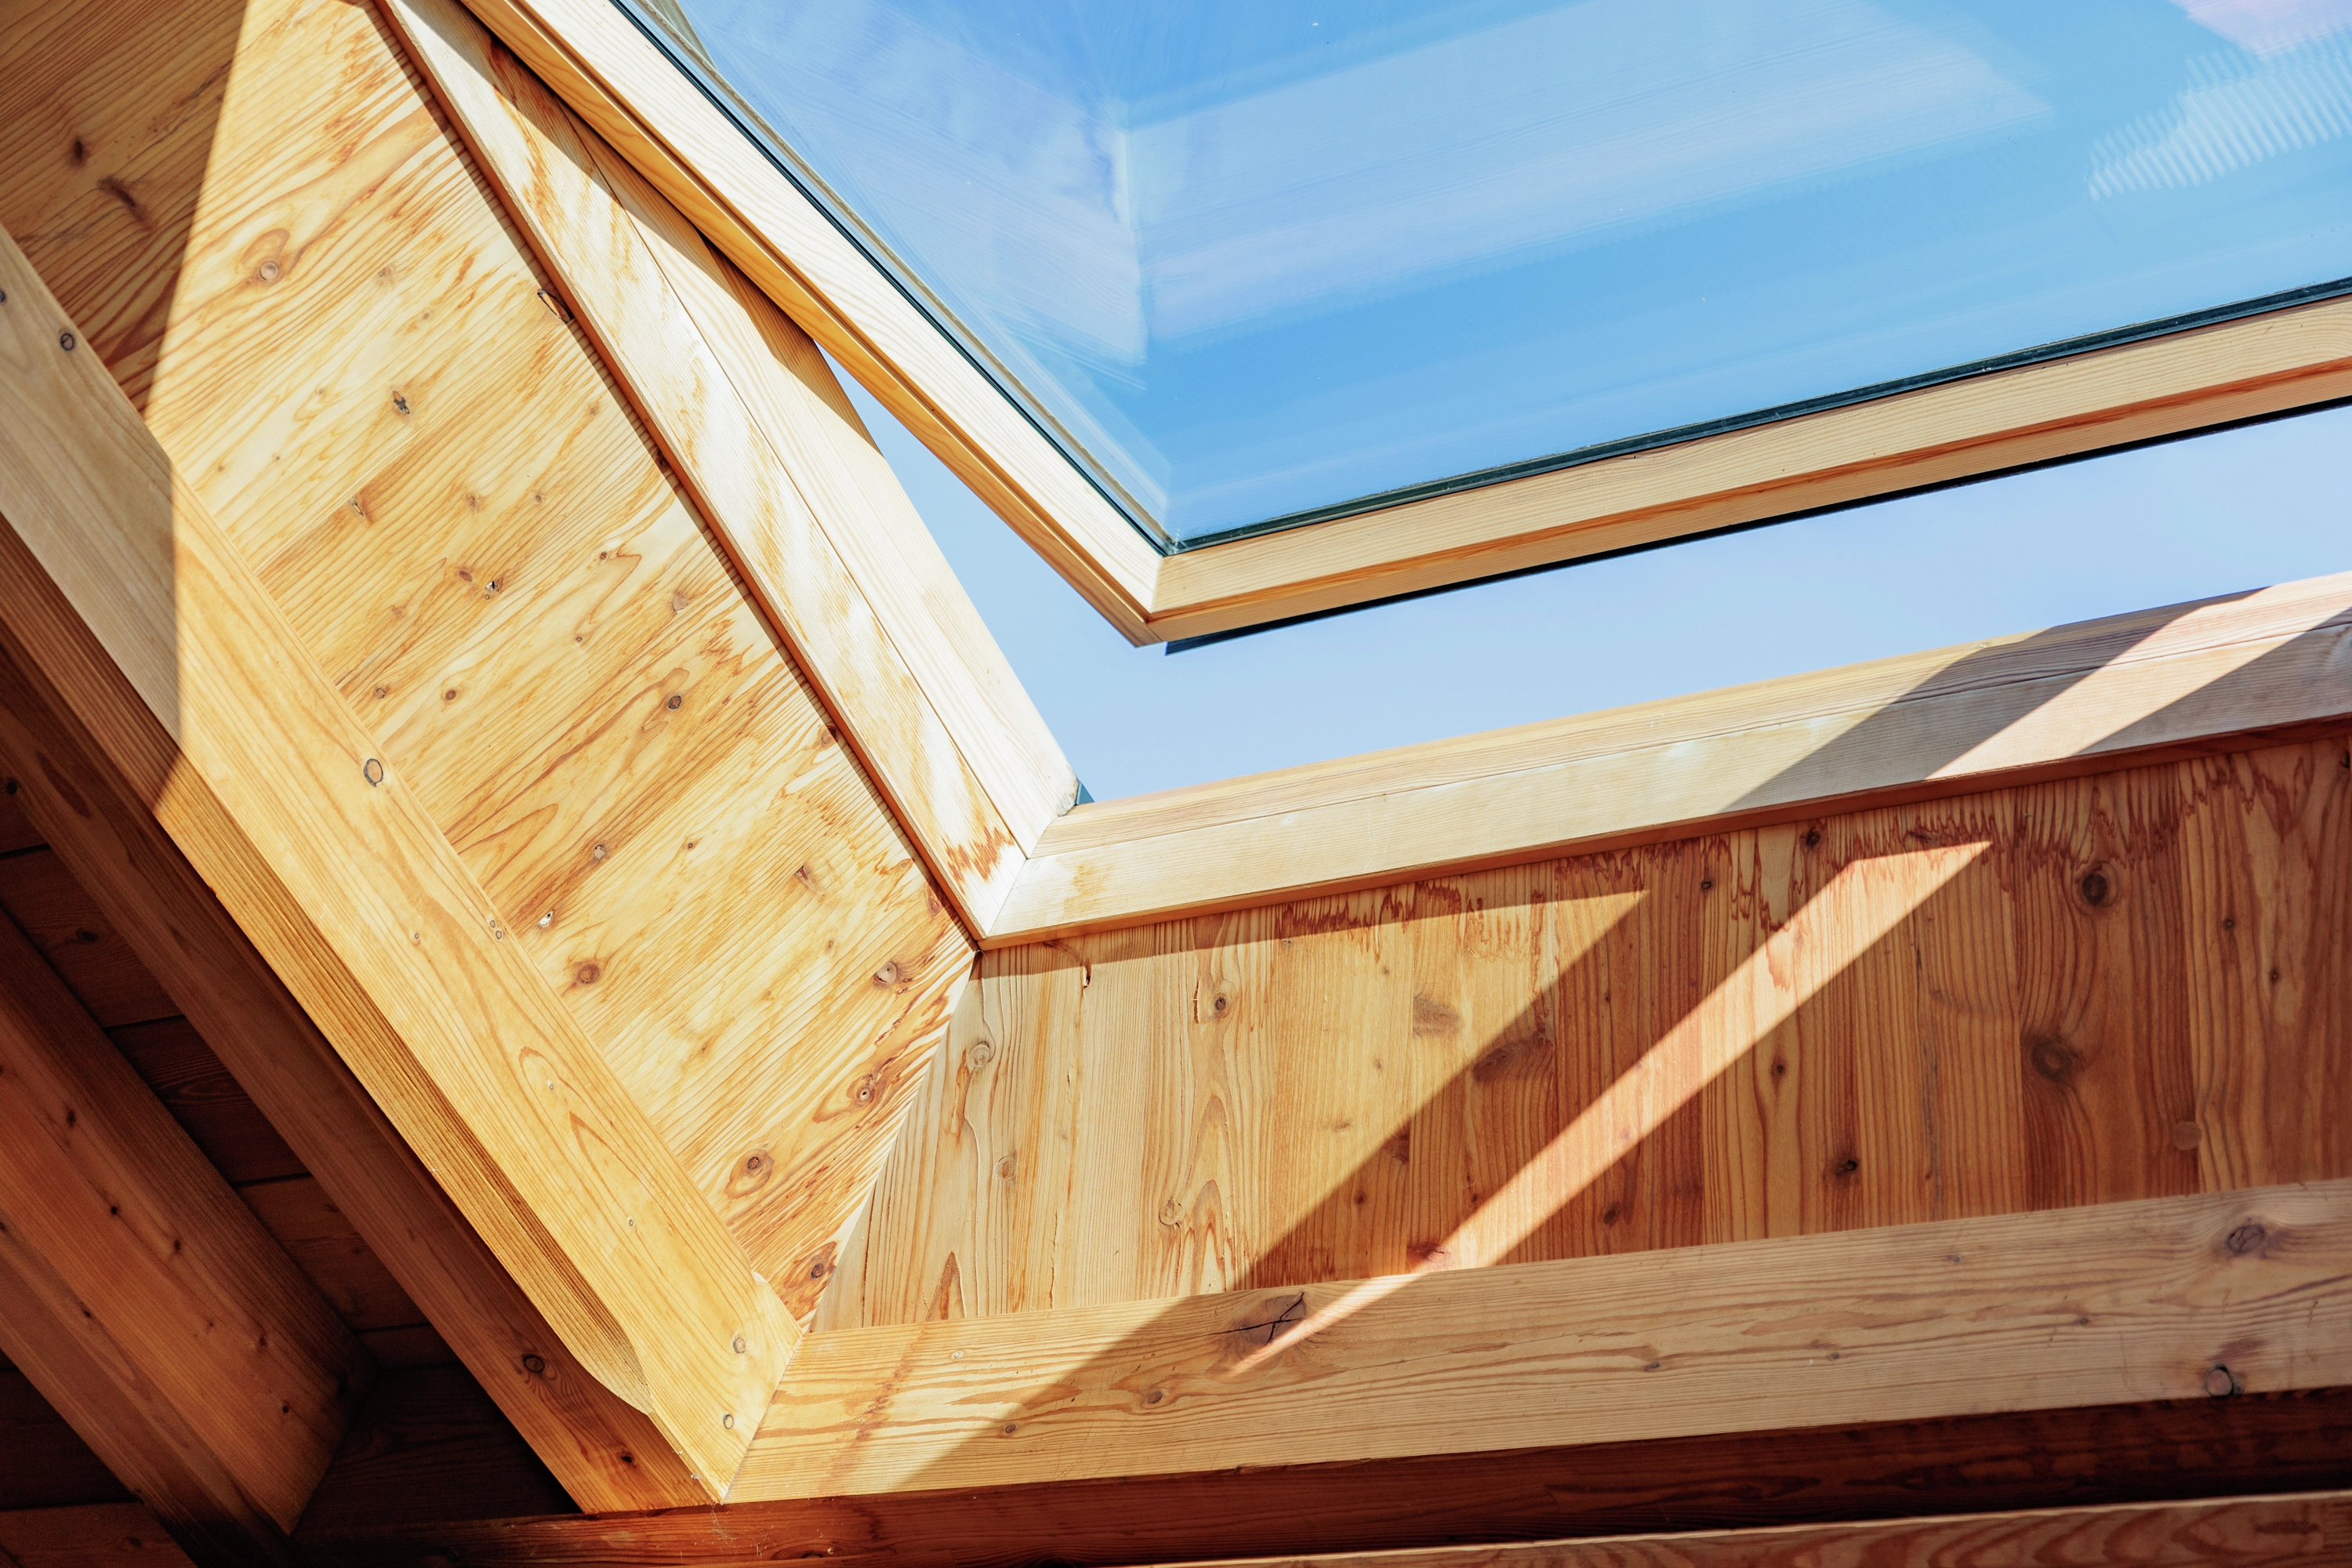 Vue intérieure d'une fenêtre de toit avec triple vitrage, encadrée de bois naturel, conçue pour fournir une isolation thermique et acoustique optimale dans un intérieur lumineux.